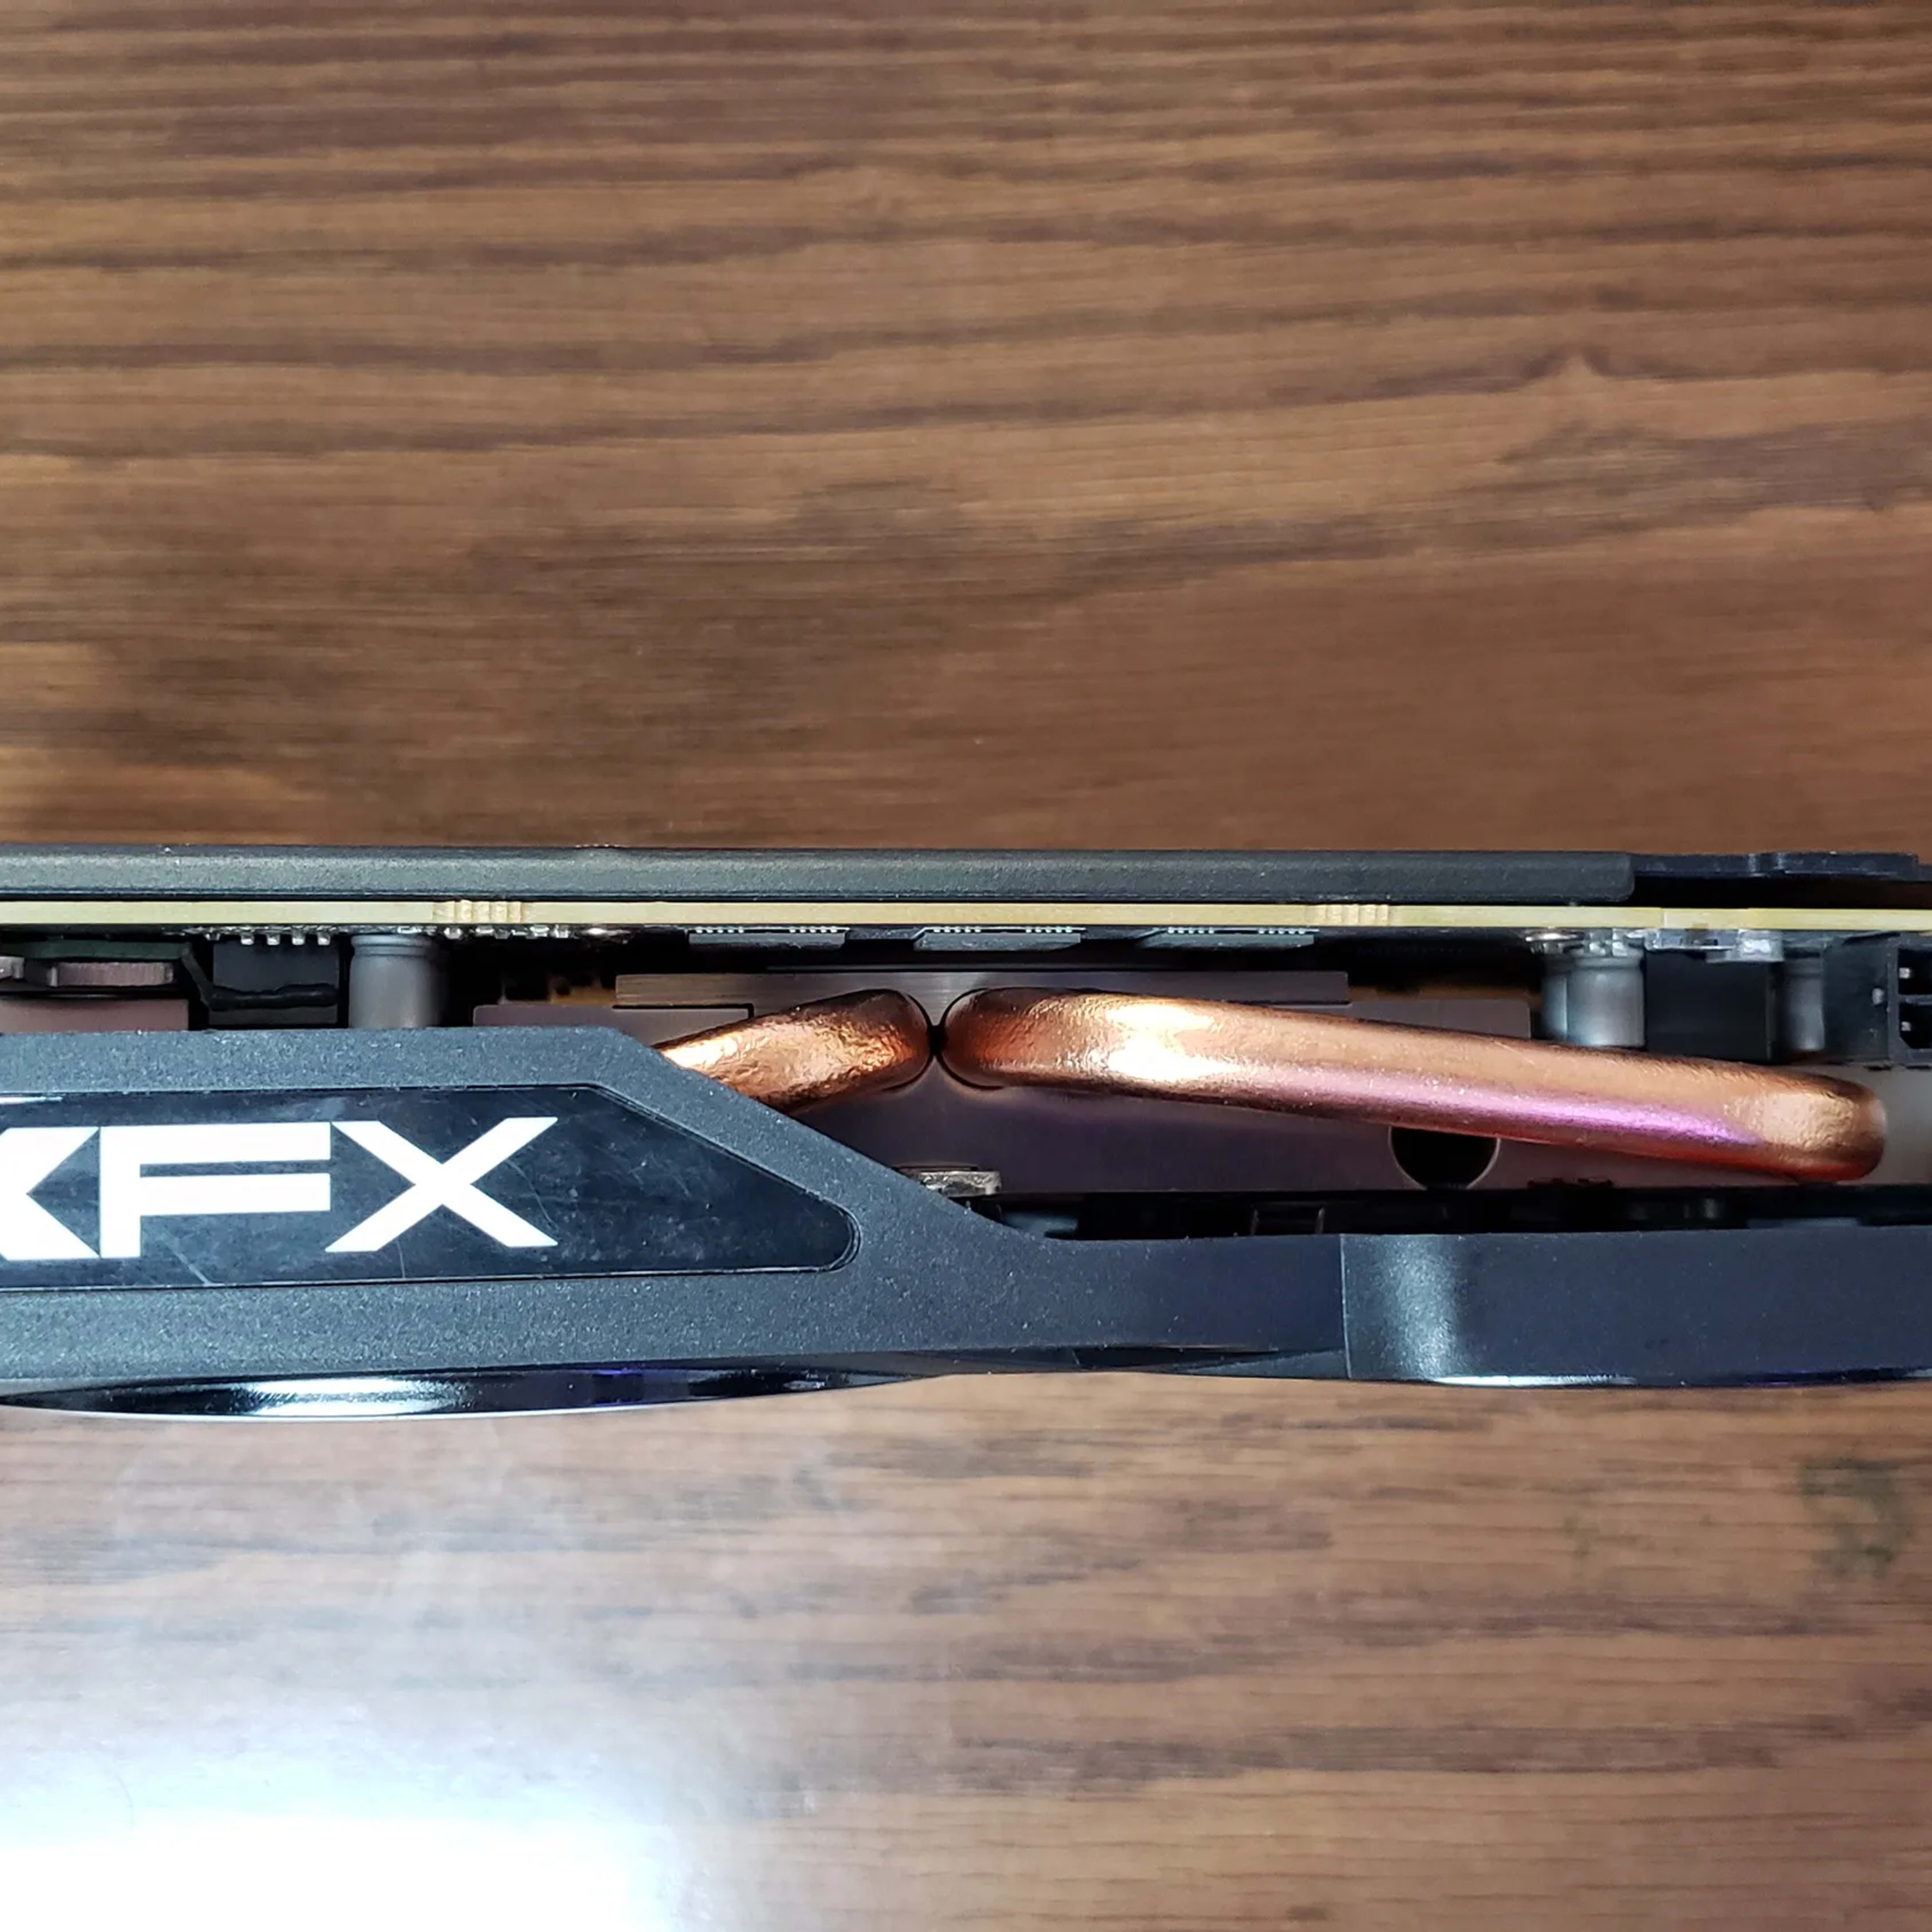 XFX RX 570 graphics card 8gb mem